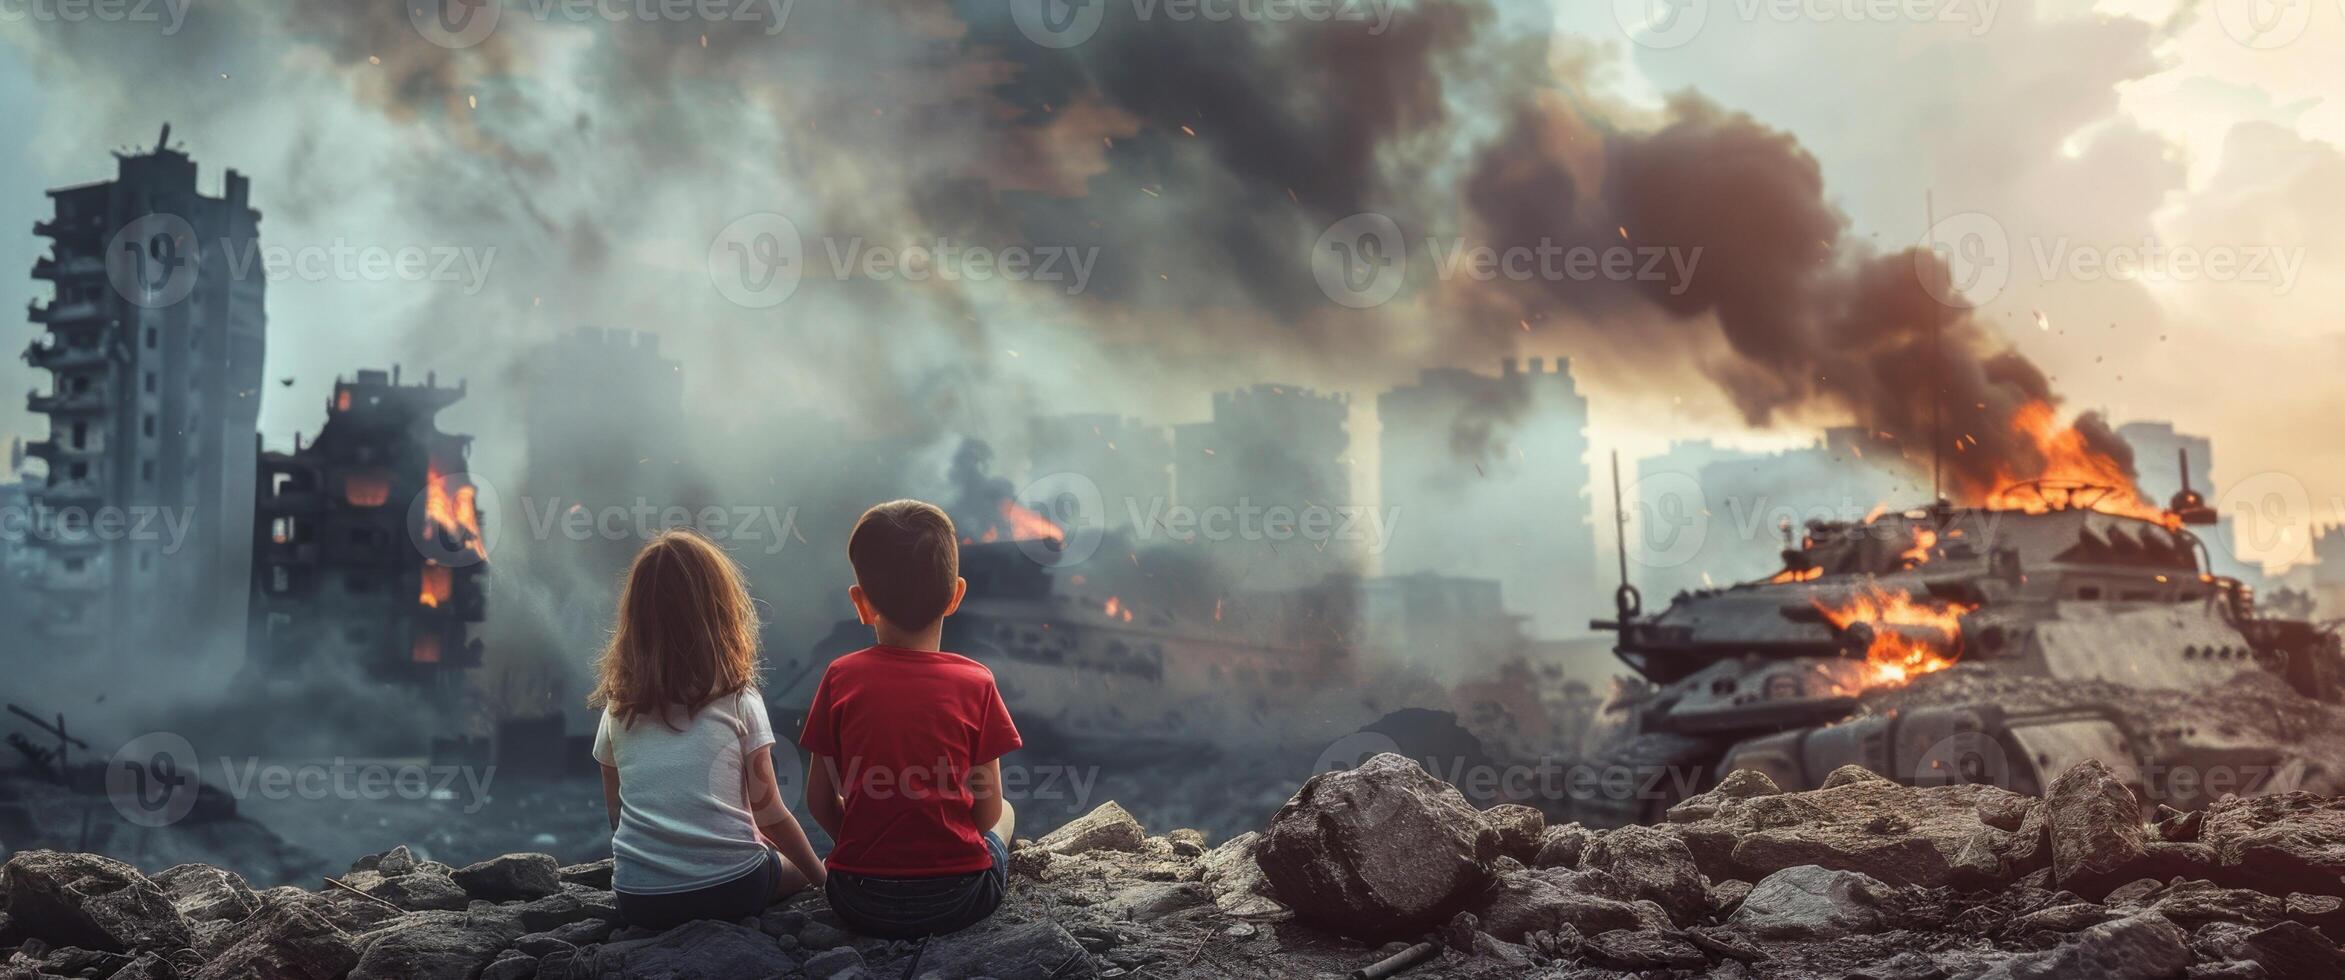 crianças contra a pano de fundo do uma destruído cidade foto